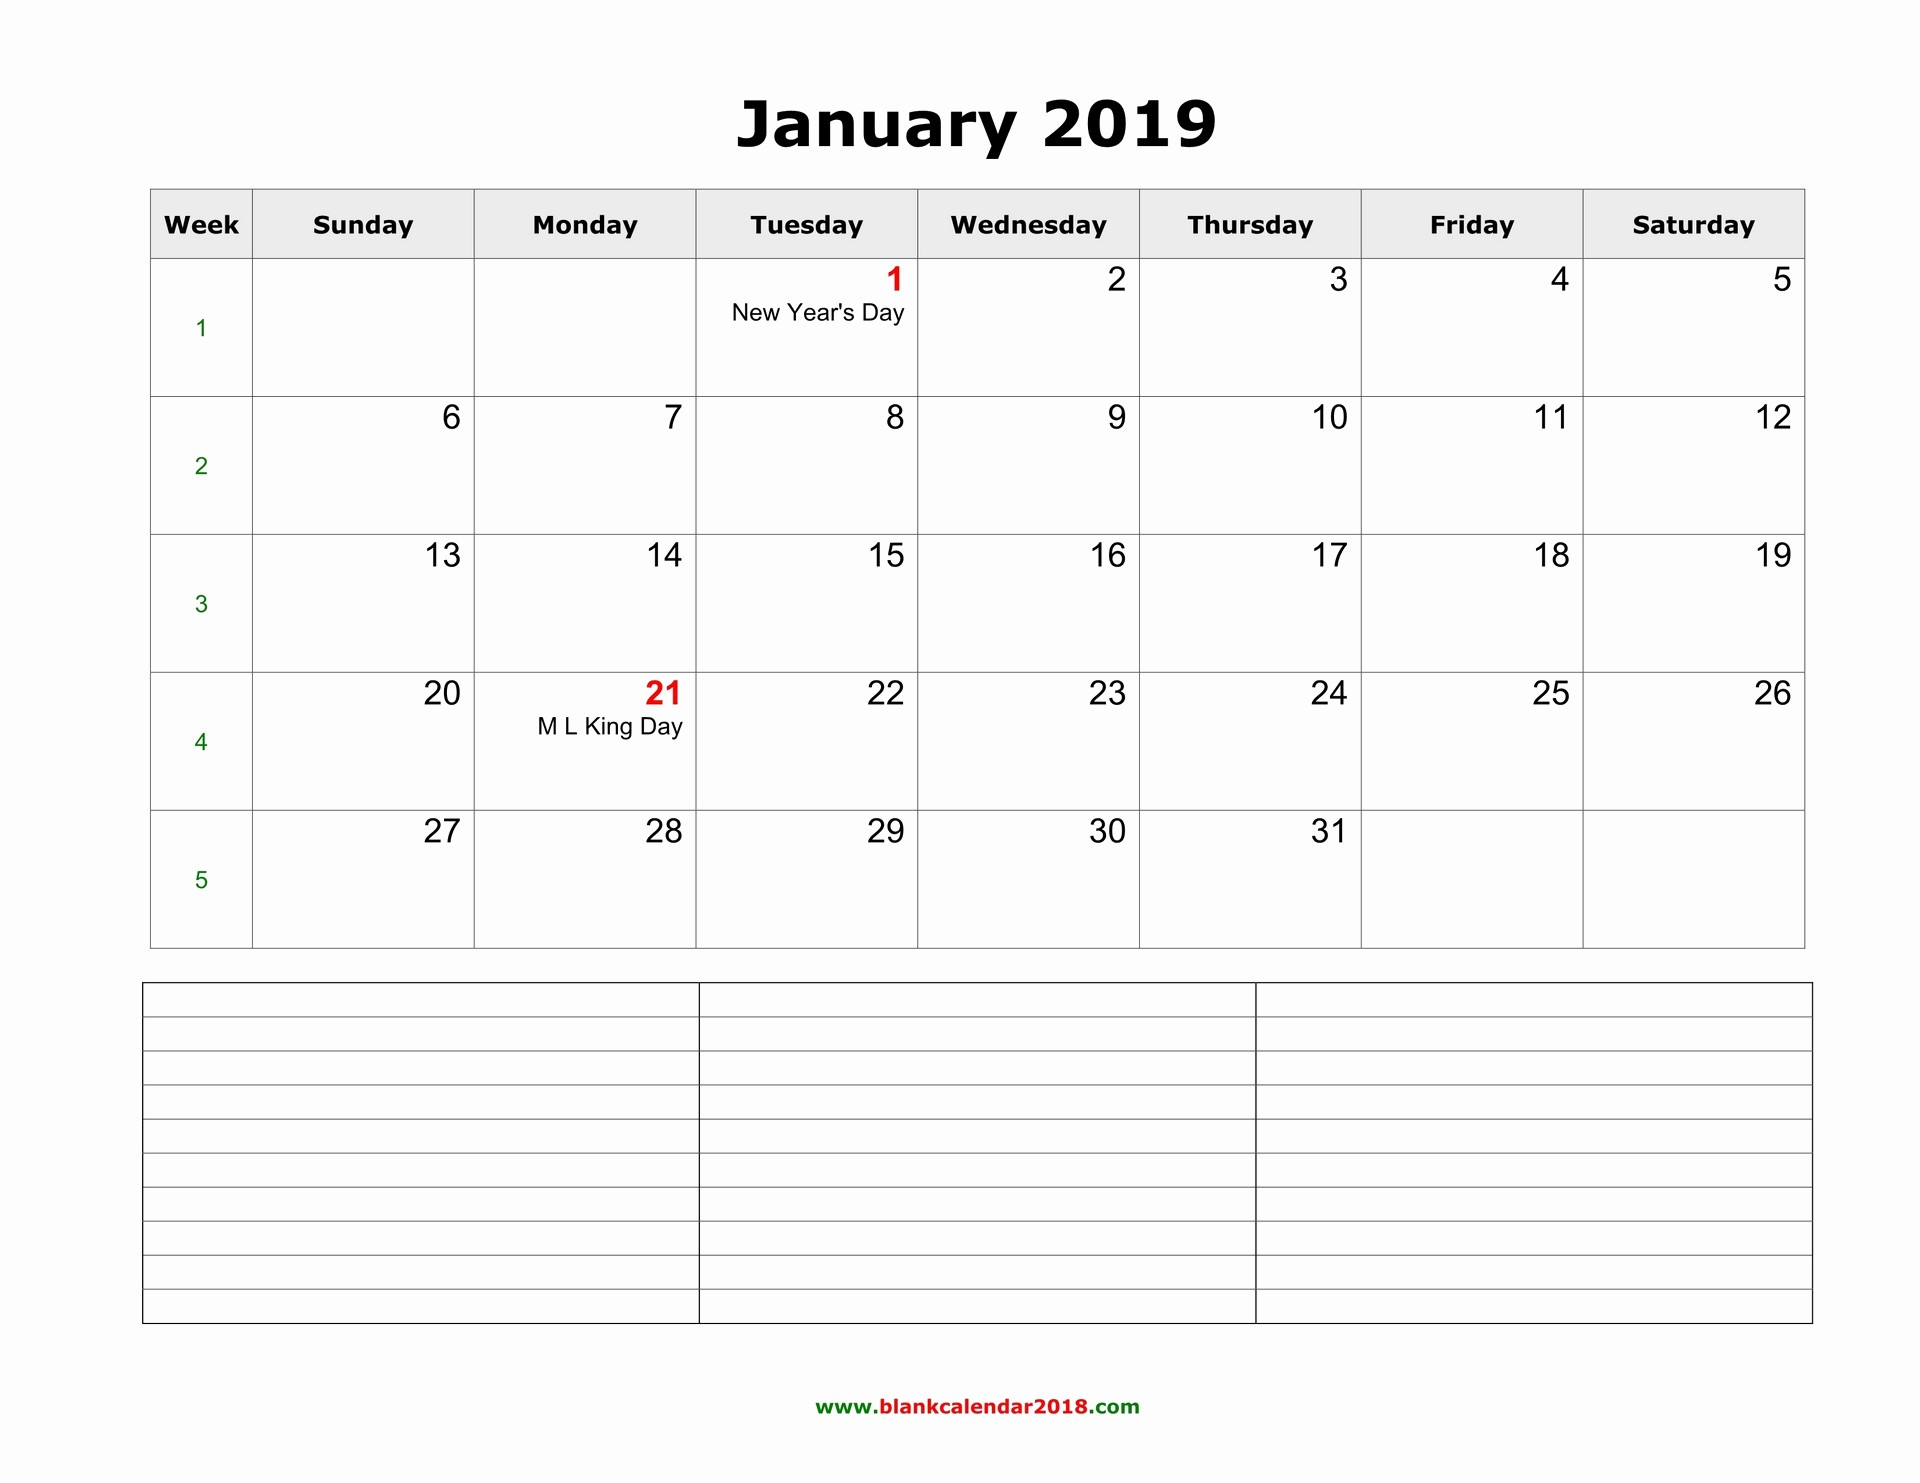 Blank January 2019 Calendar Template New Blank Calendar for January 2019